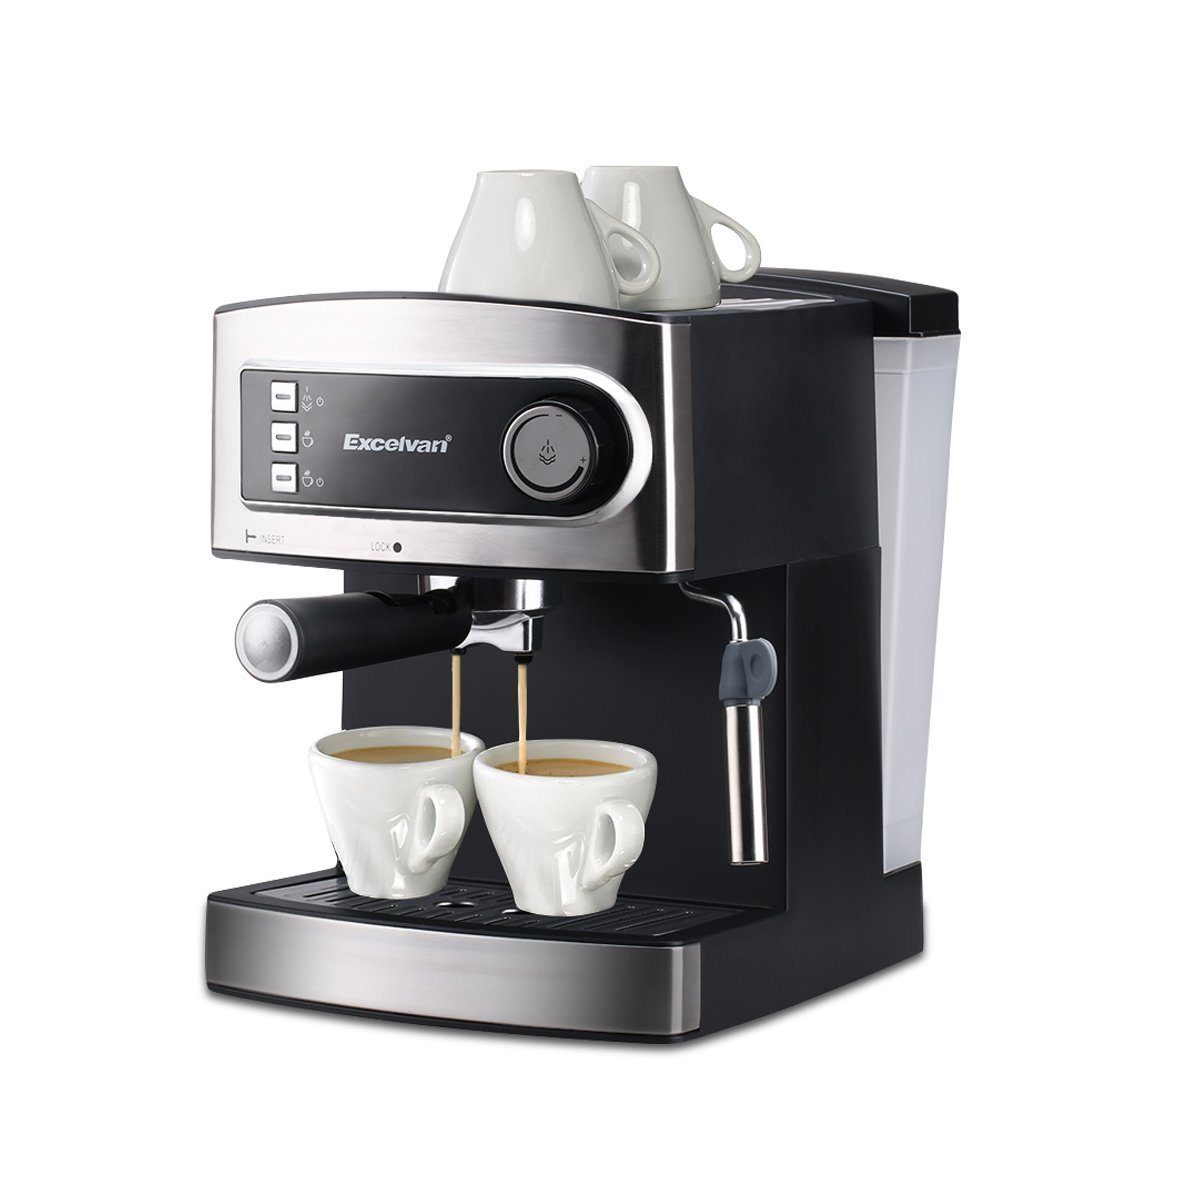 Excelvan Italian Style Coffee Machine